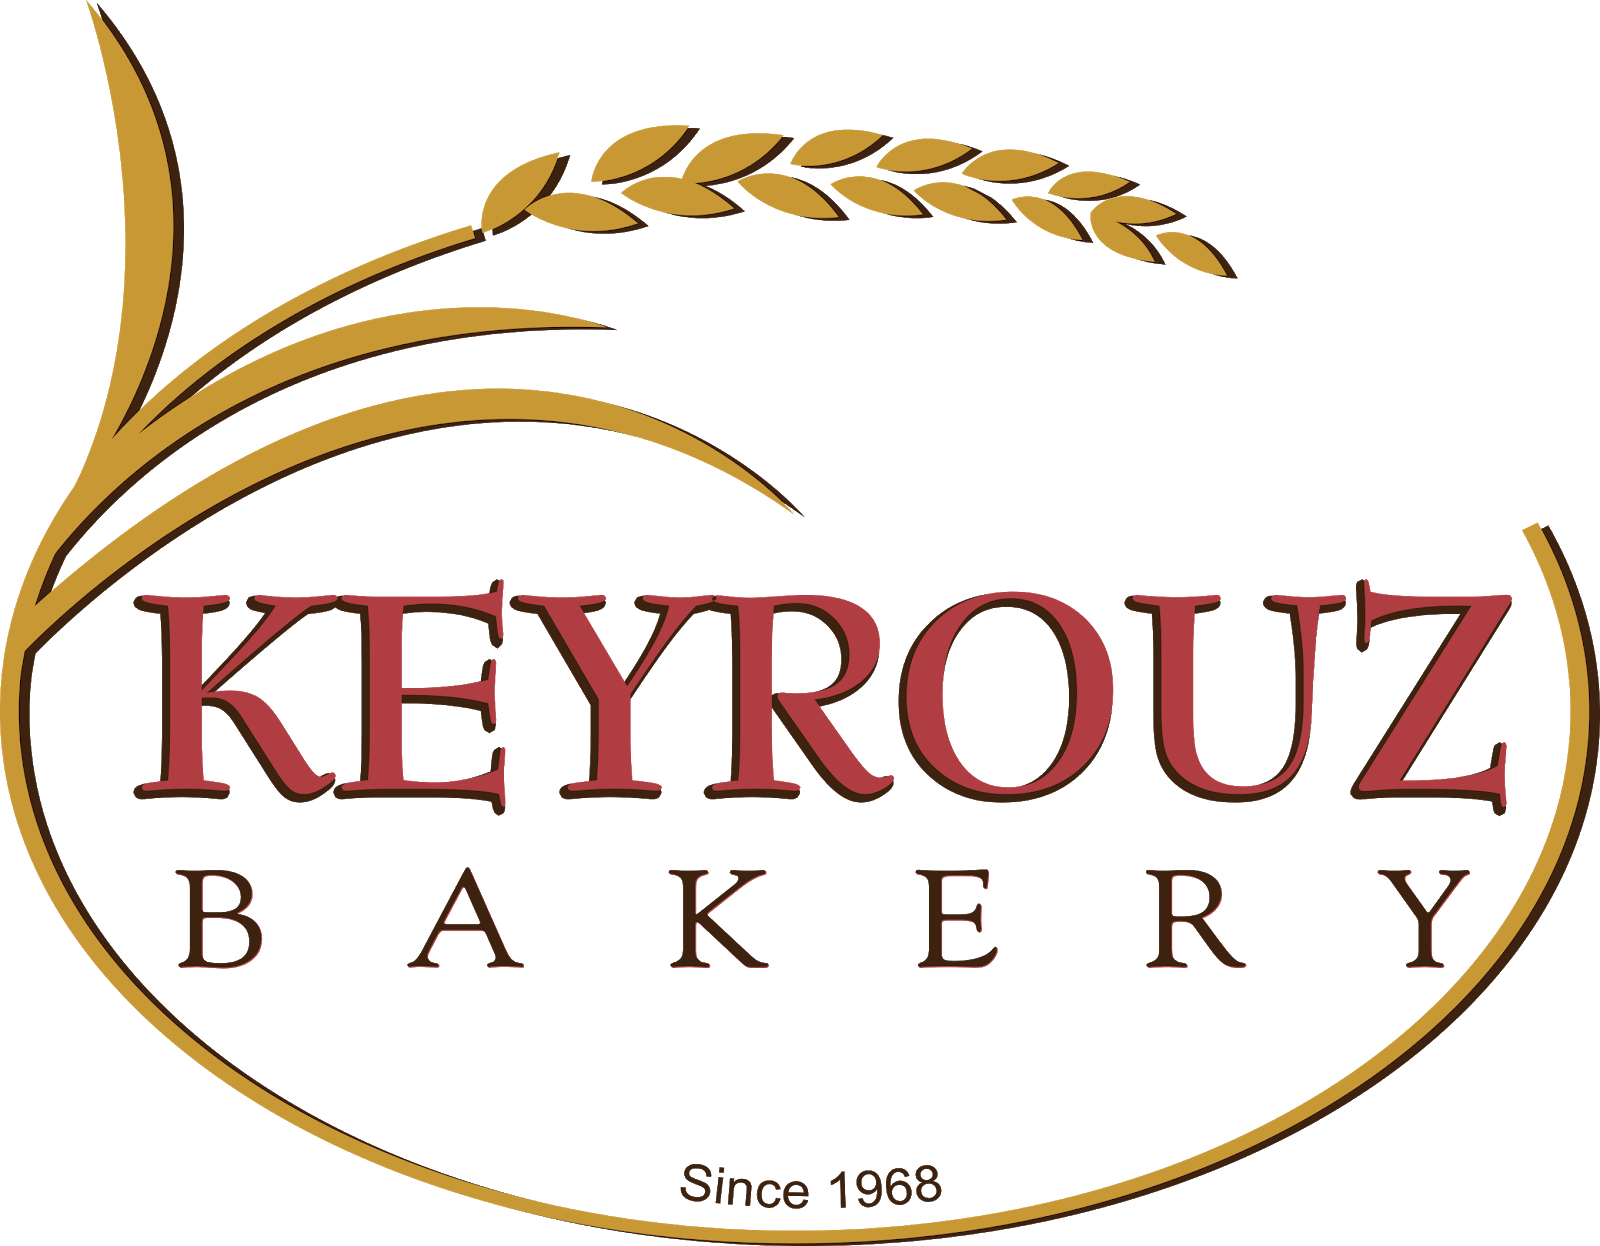 Keyrouz Bakery